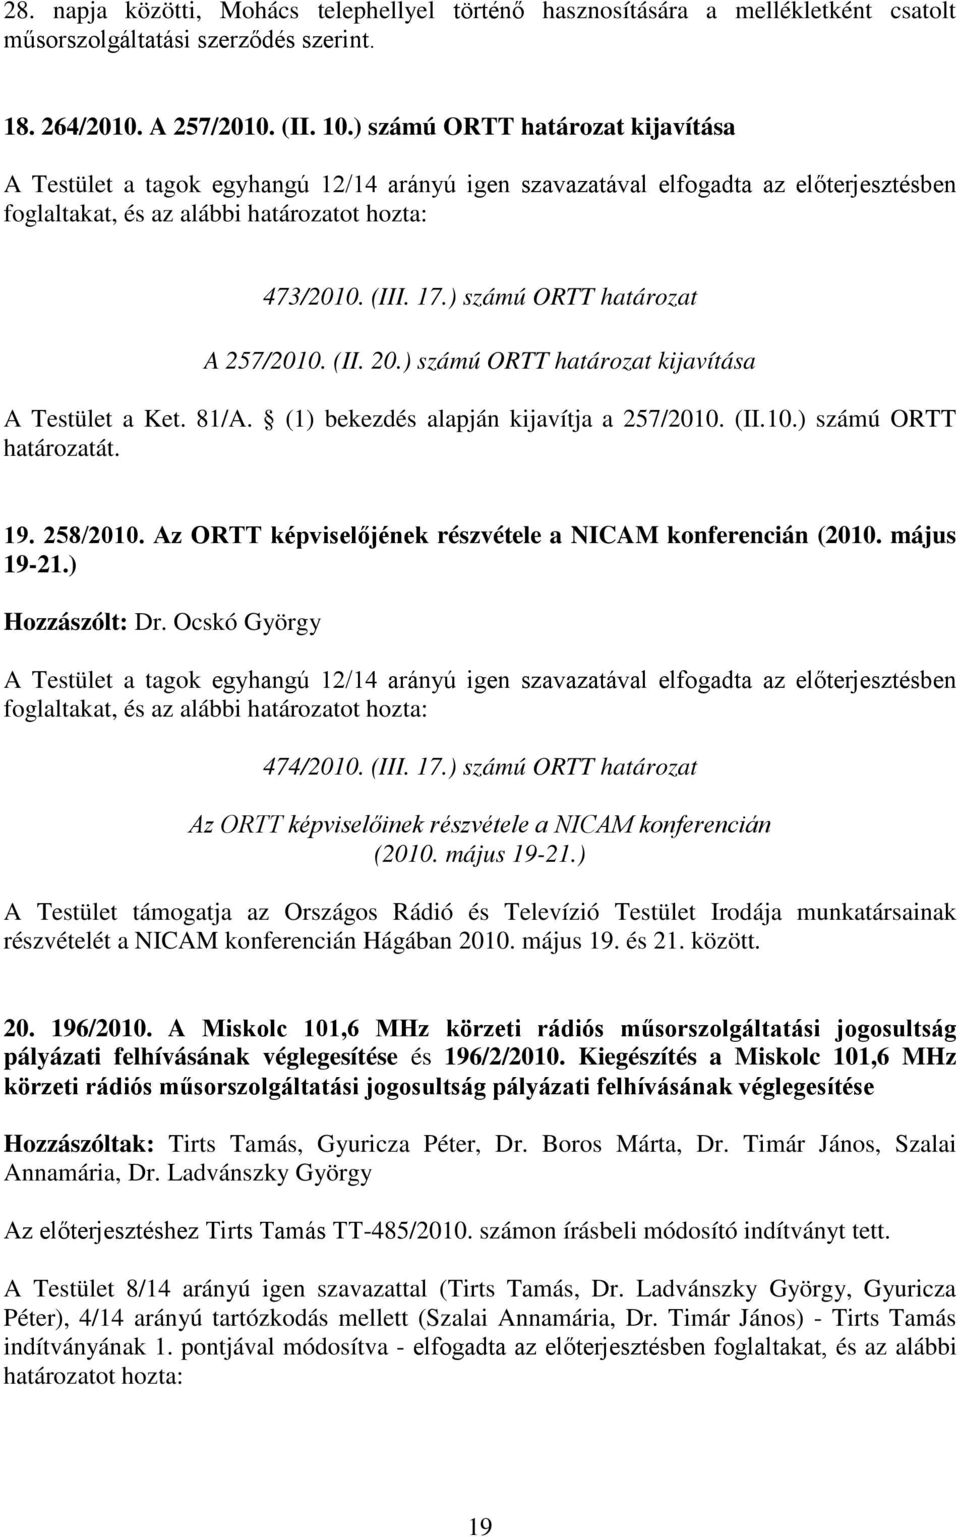 (II.10.) számú ORTT határozatát. 19. 258/2010. Az ORTT képviselőjének részvétele a NICAM konferencián (2010. május 19-21.) Hozzászólt: Dr. Ocskó György 474/2010. (III. 17.